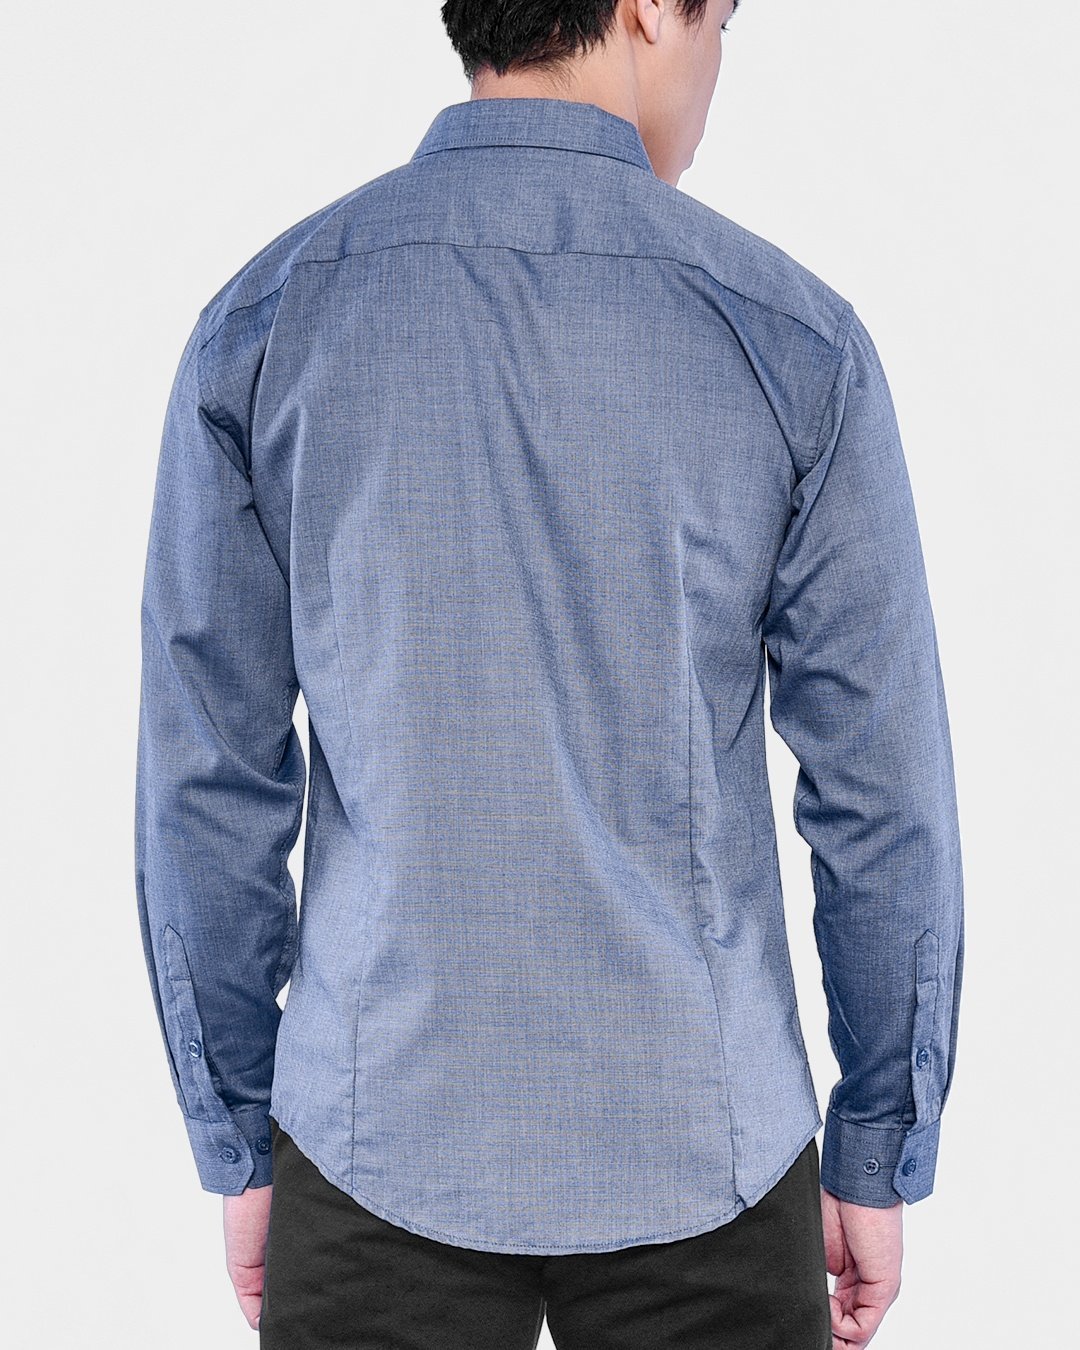 Modern Fit Long Sleeve Shirt (Hidden Button Down Collar) - Denim Grey ...